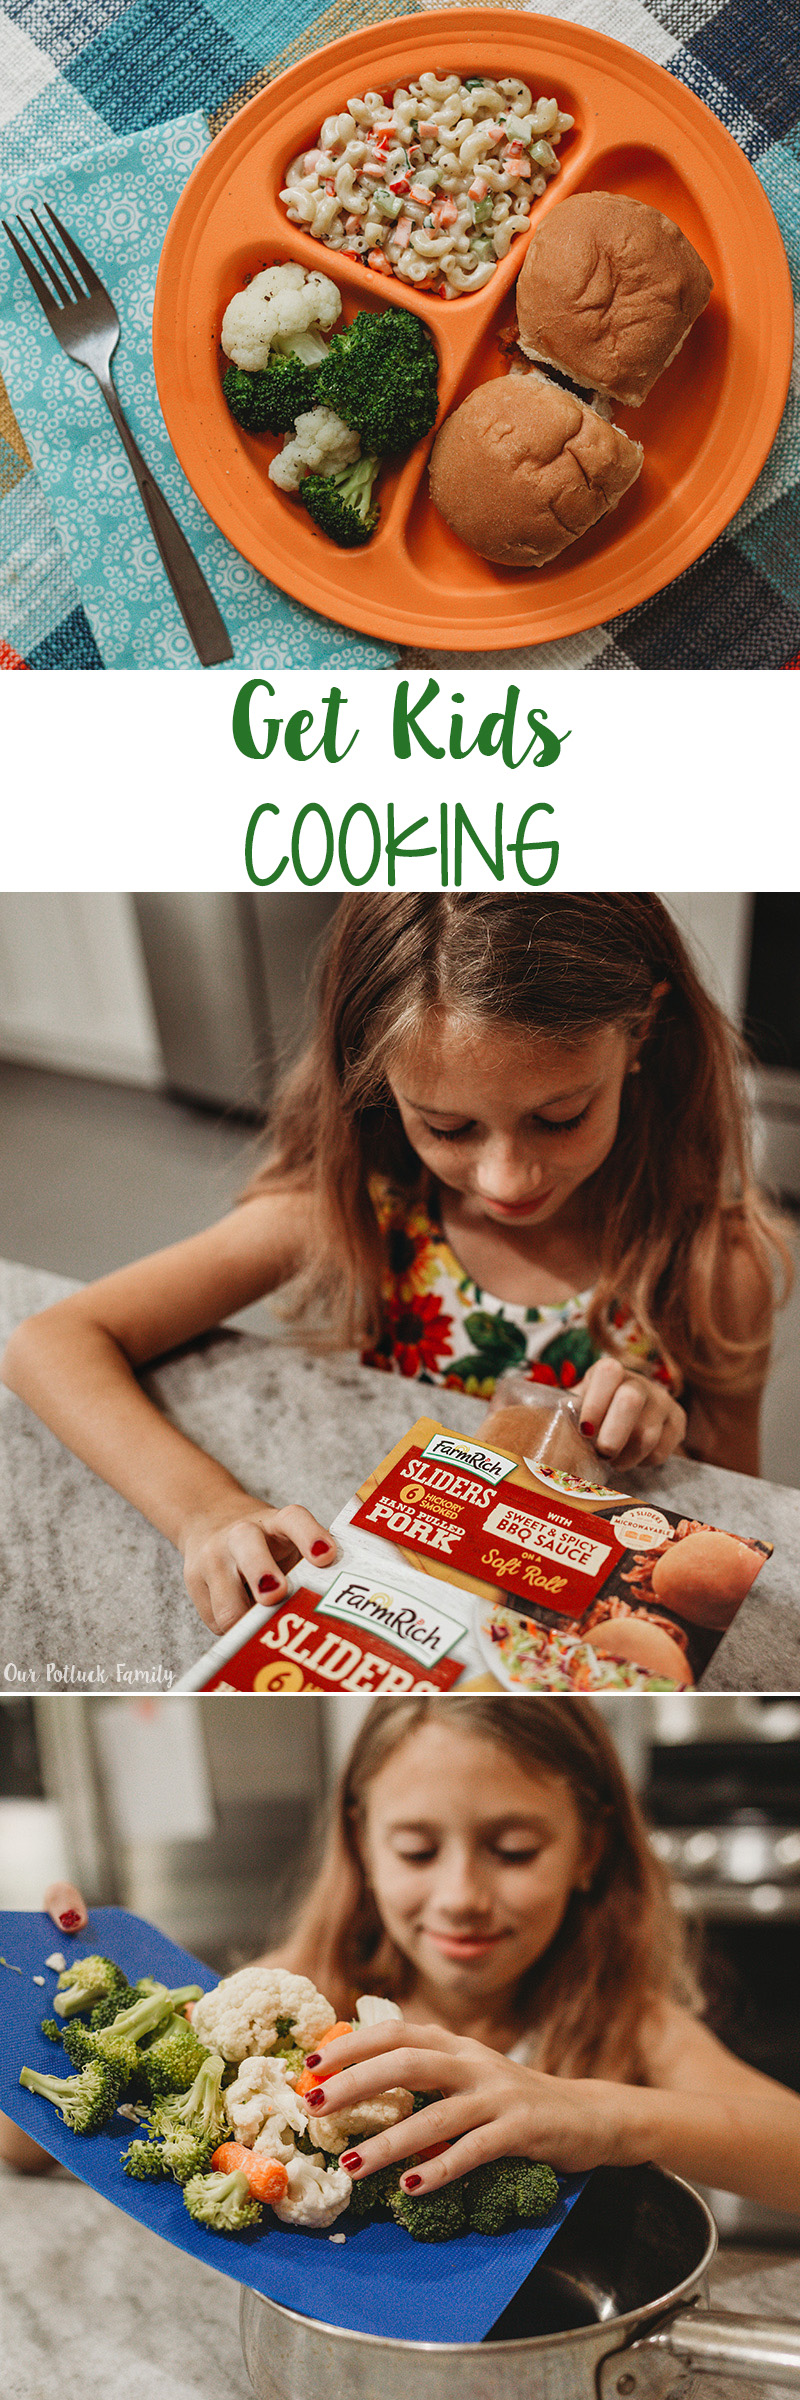 Get Kids Cooking